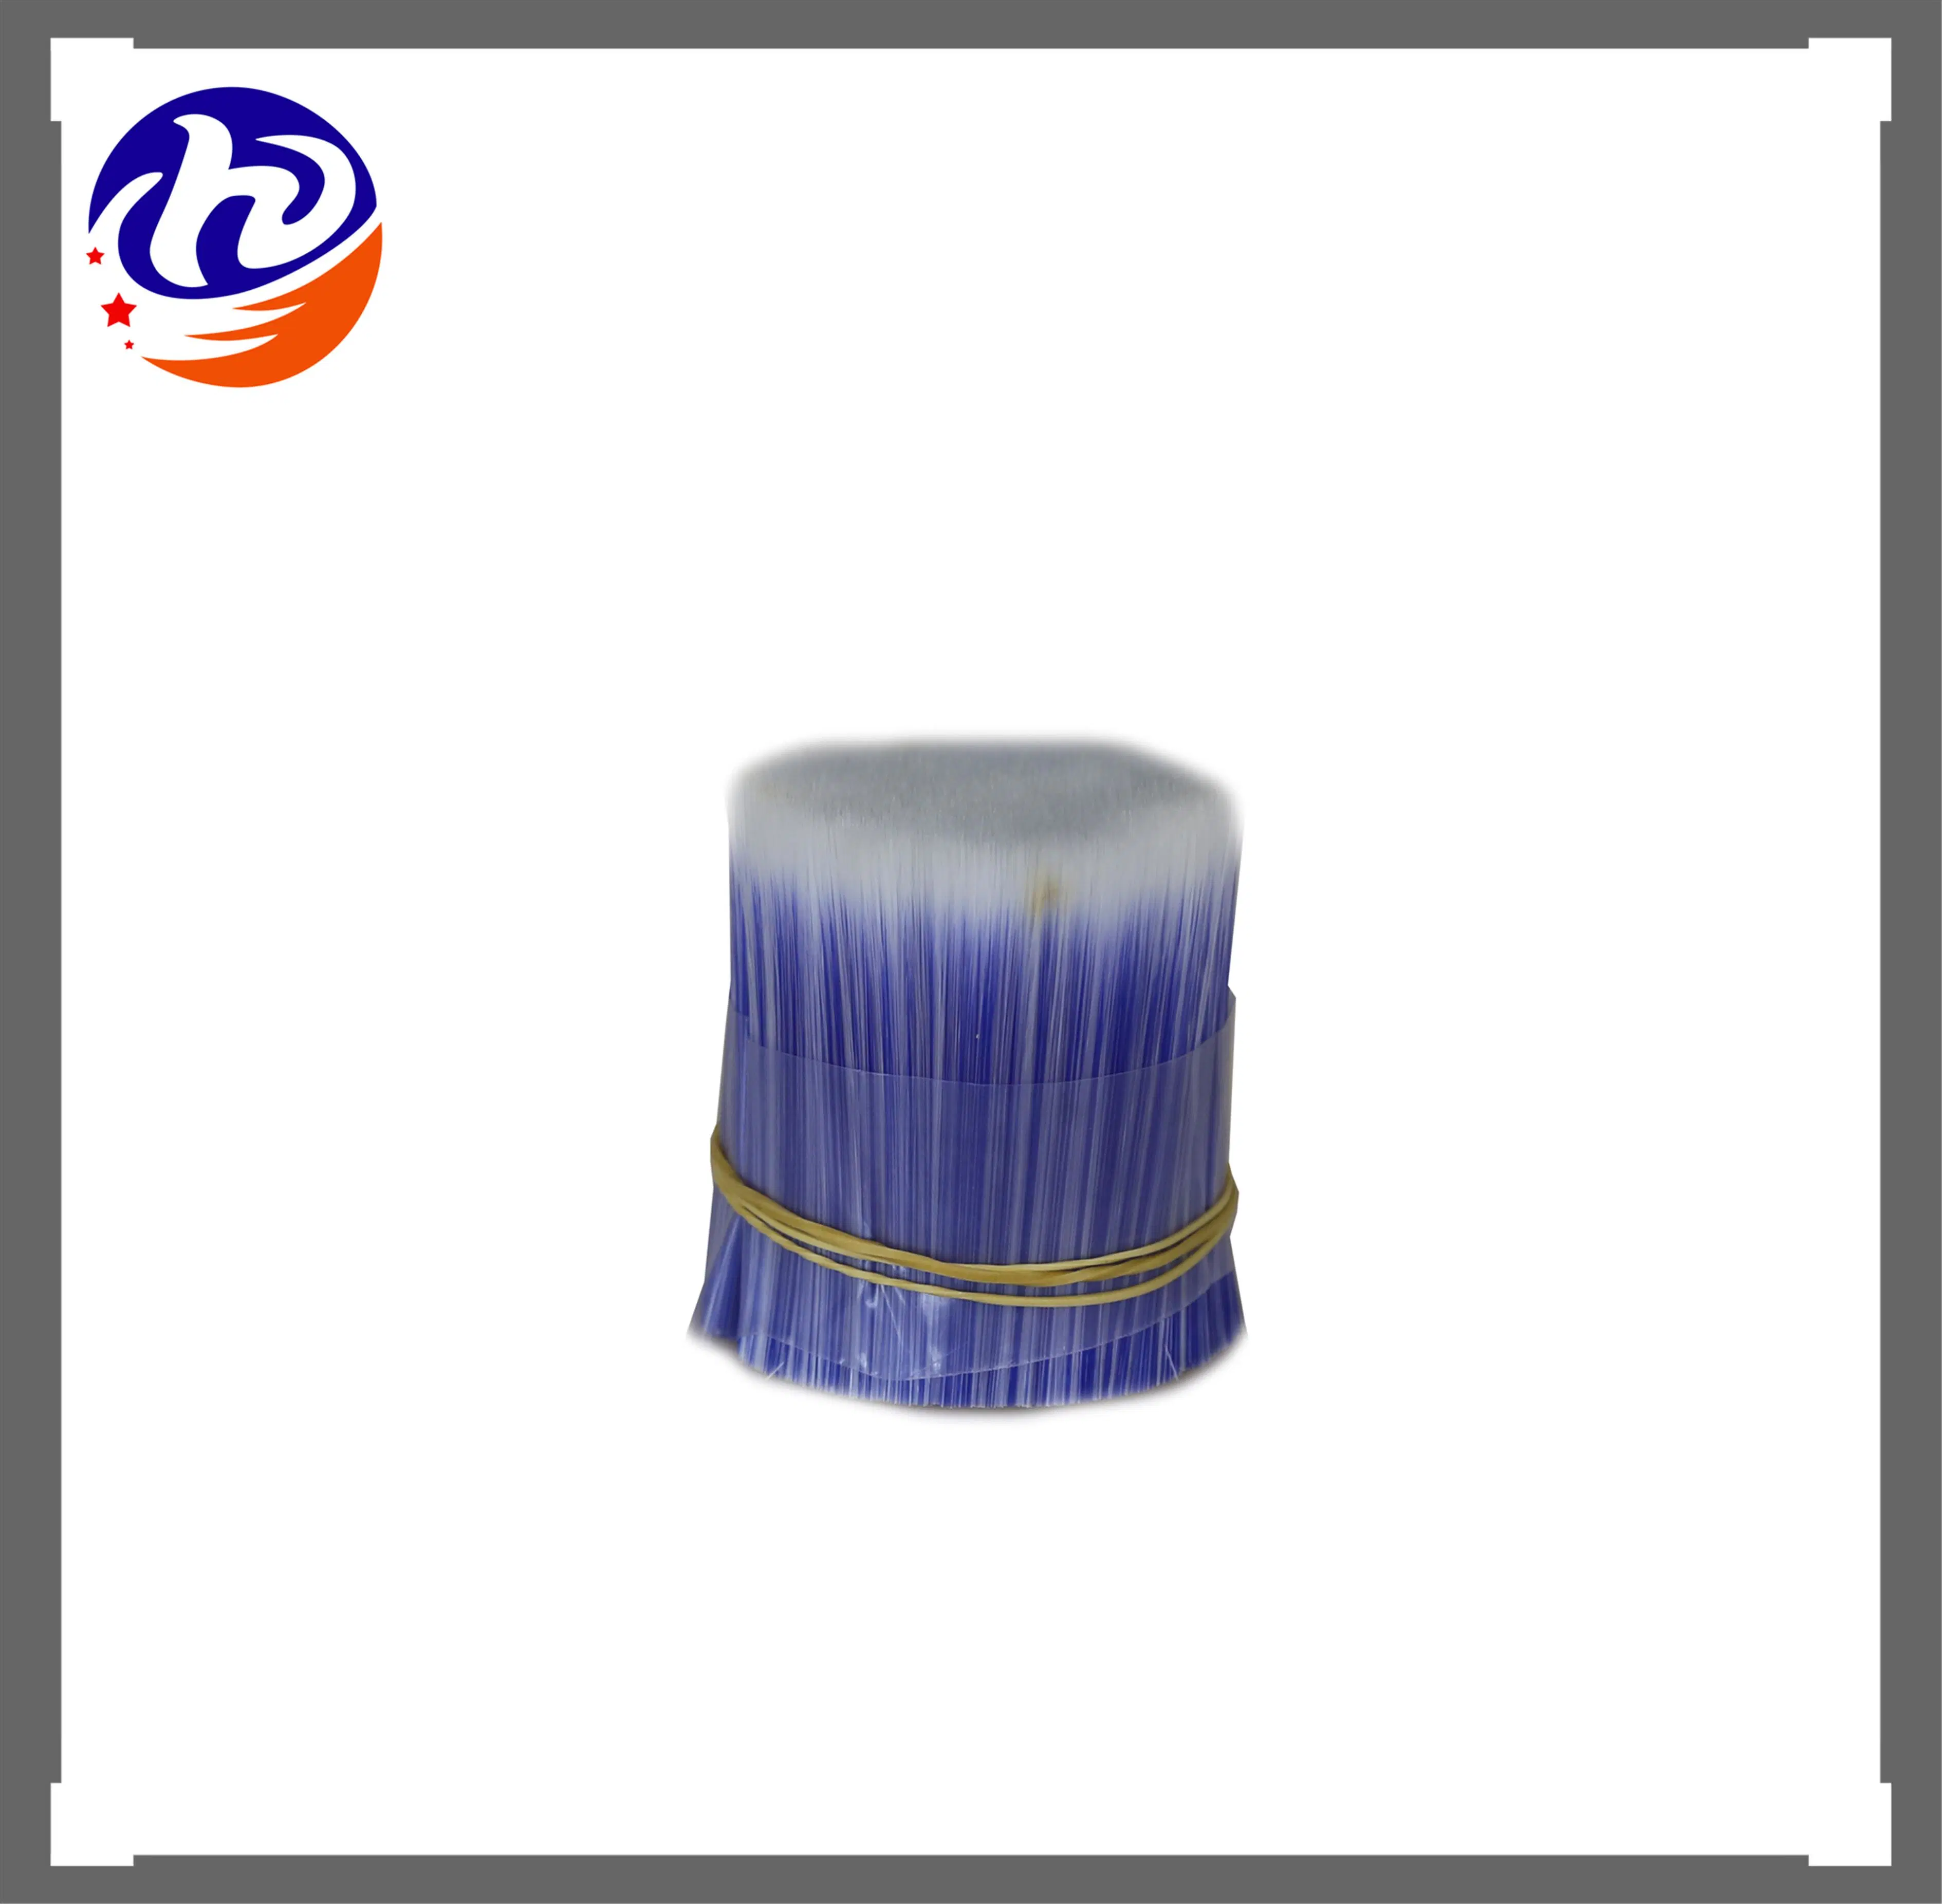 Las ventas en caliente de fibra de PBT y mejor venta de filamentos de PBT con filamento de pestañas PBT.